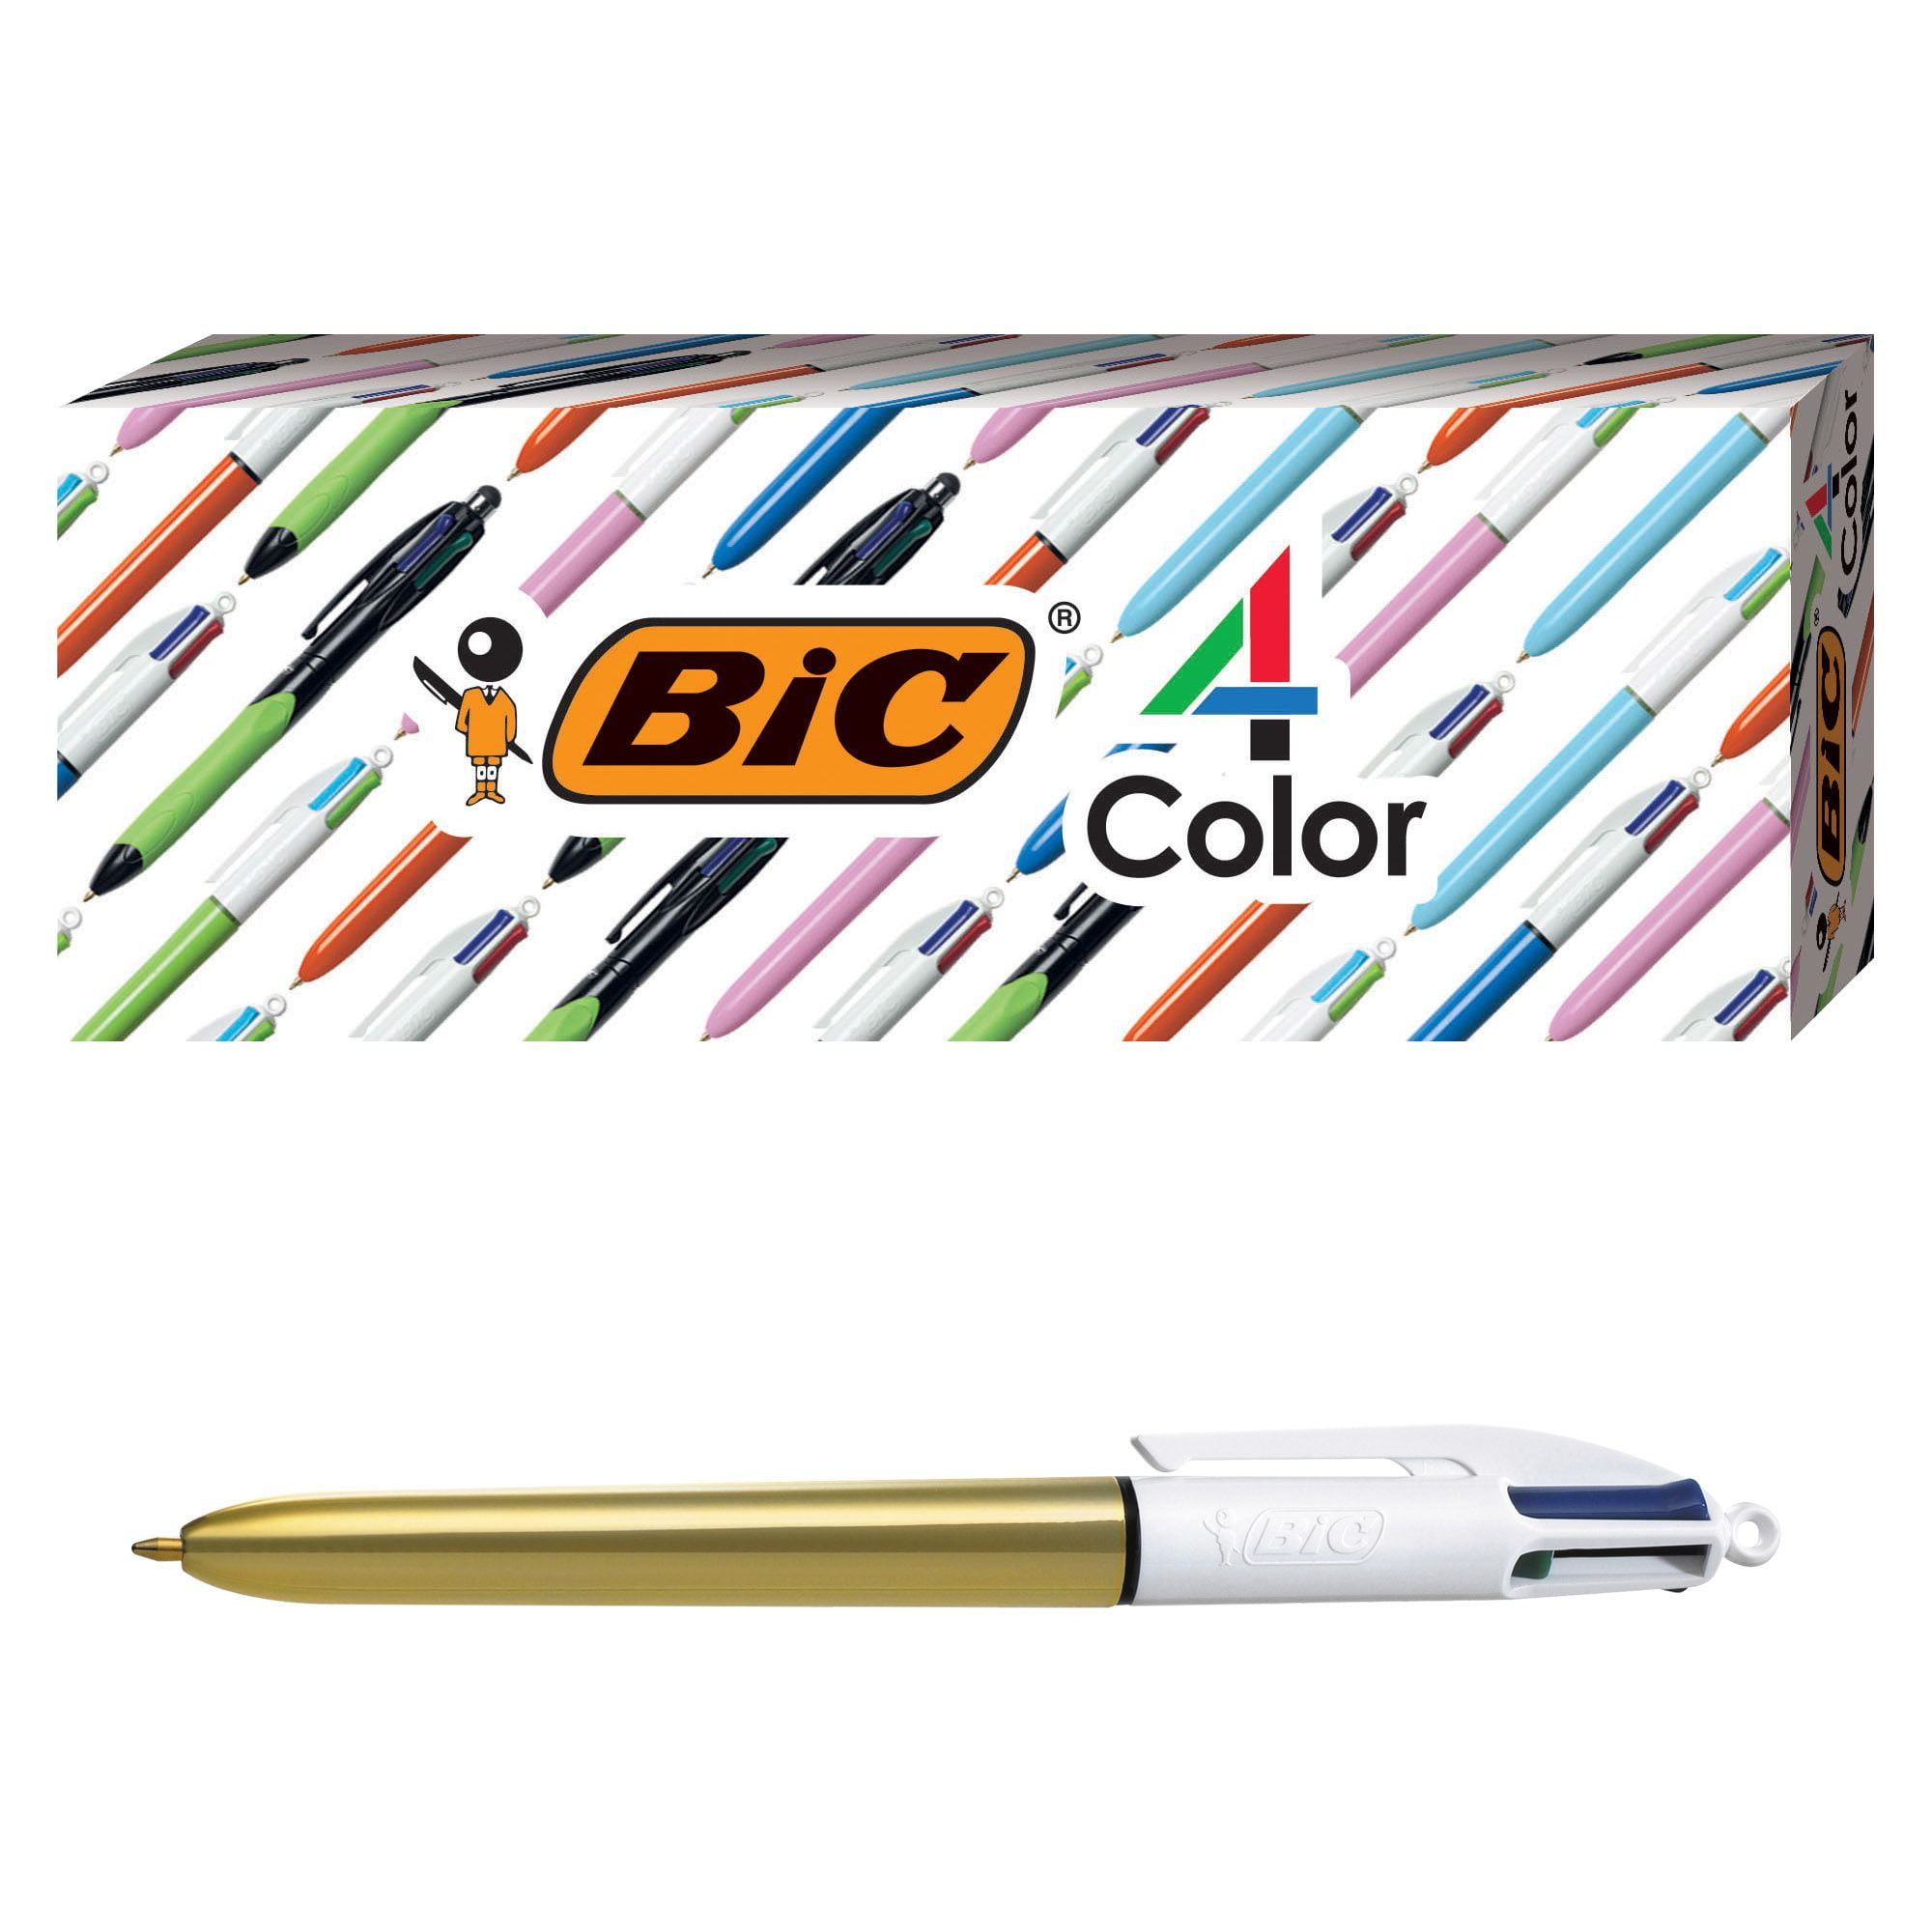 Bic stylo bille 4 Colour Shine Gold - Cumerco